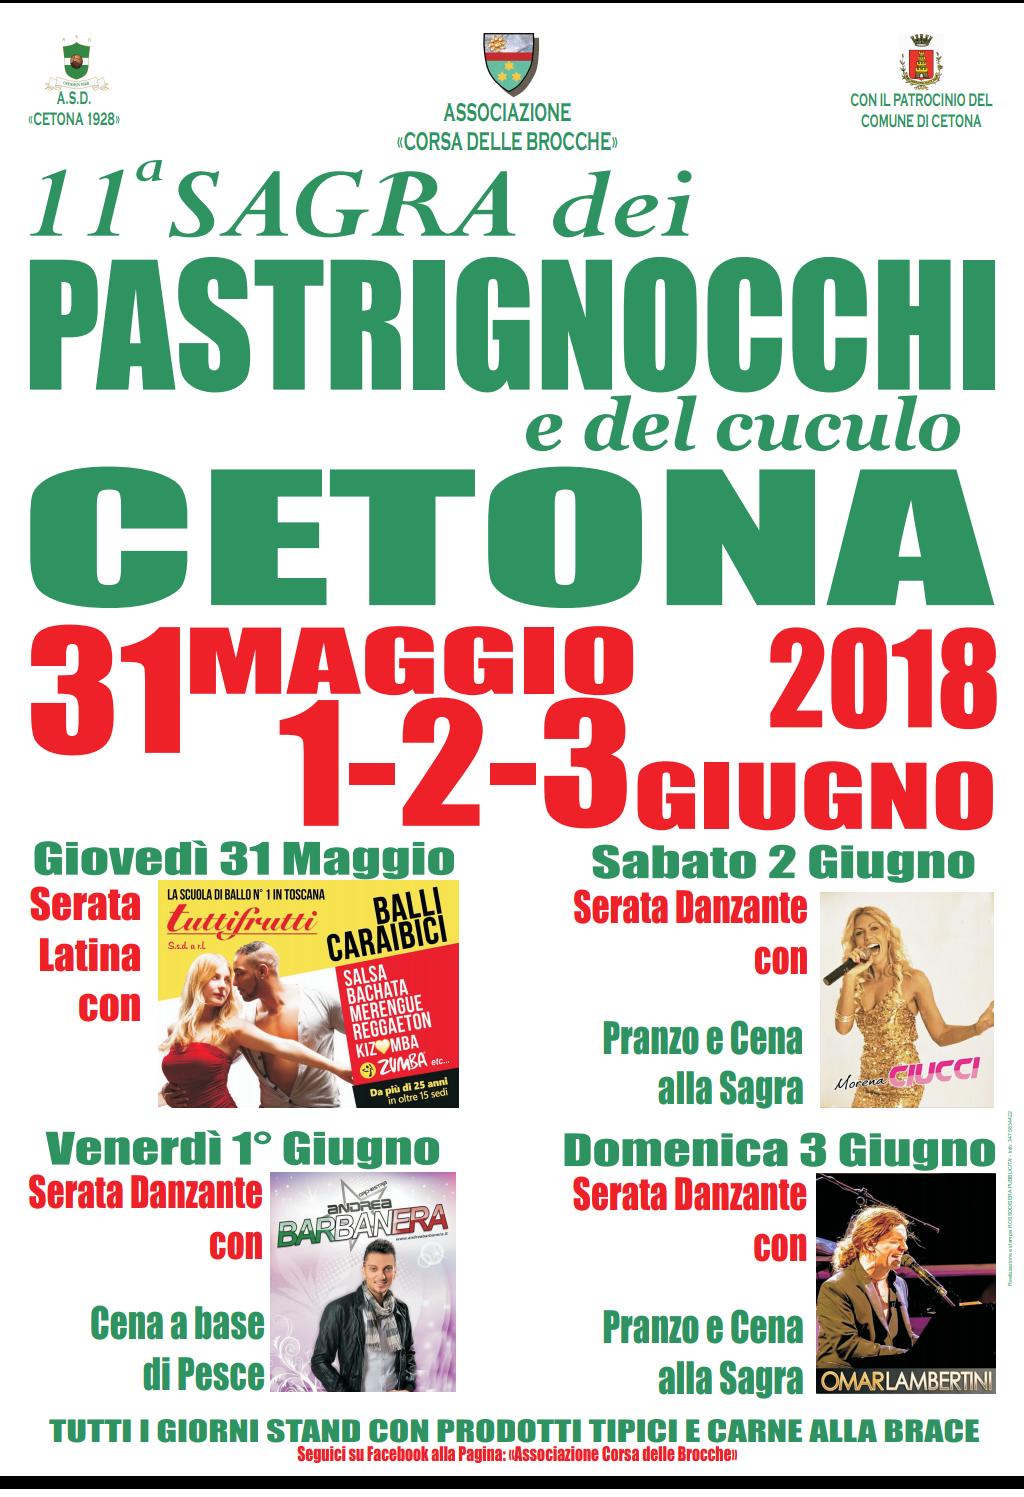 Pastrignocchi2018